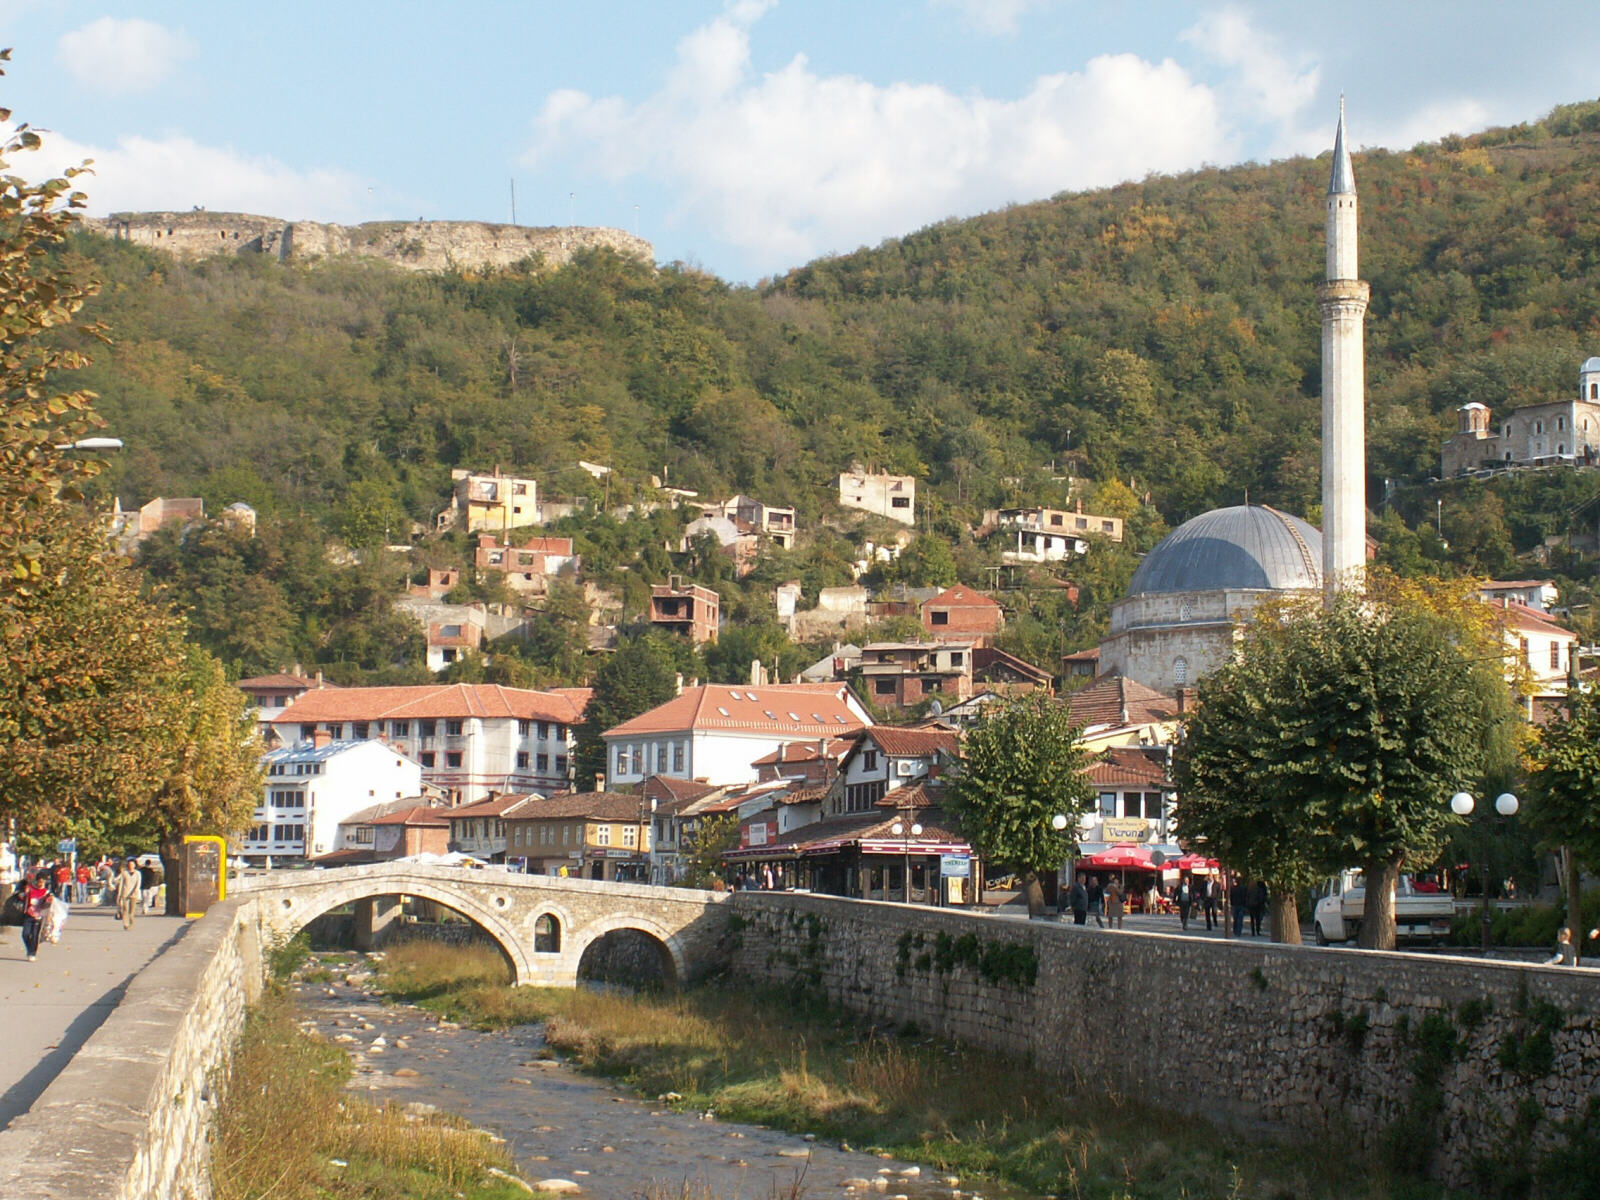 The bridge and mosque in Prizren, Kosovo